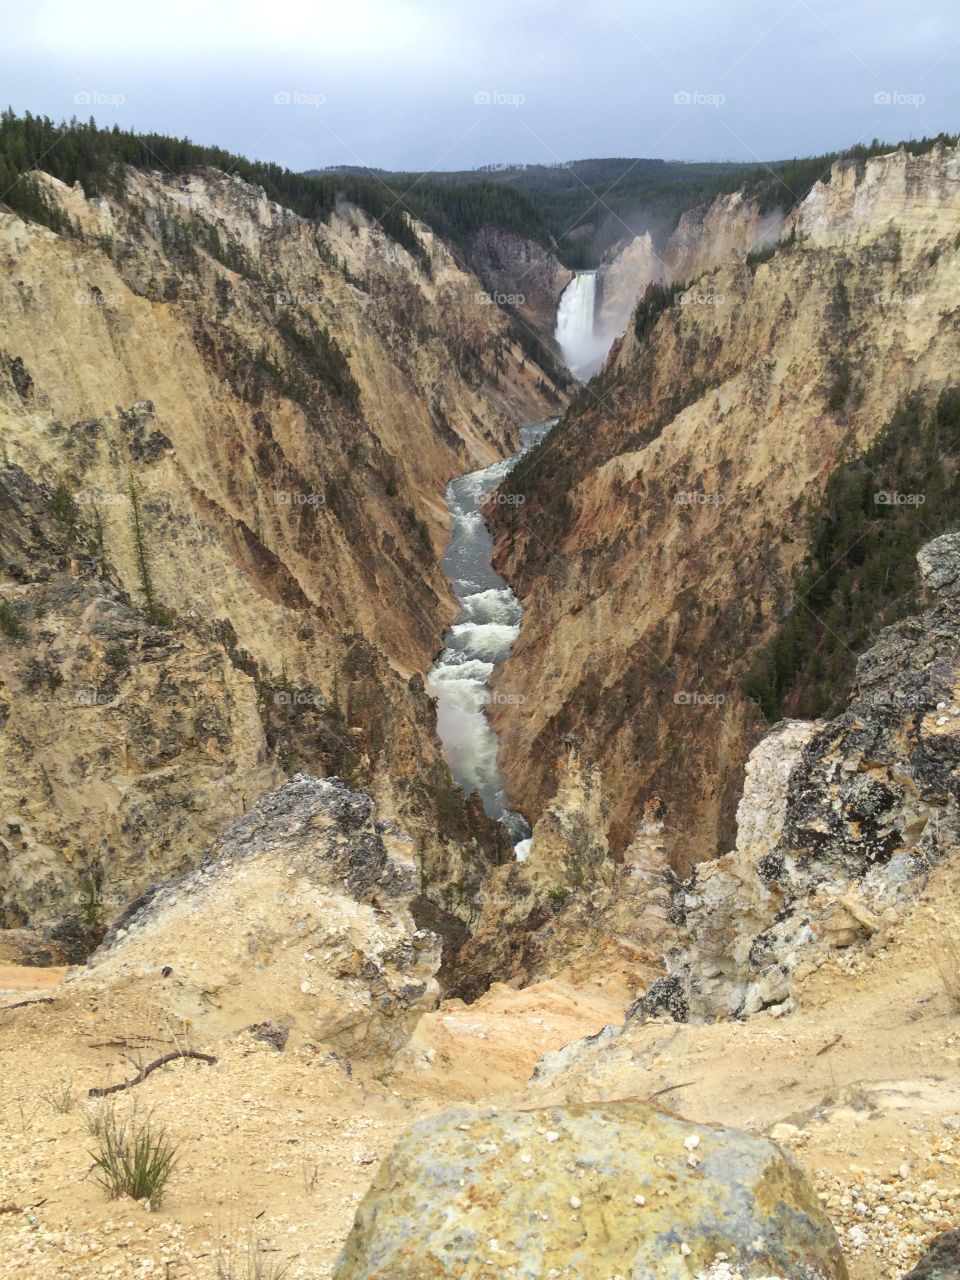 Yellowstone lower falls. Lower falls at Yellowstone